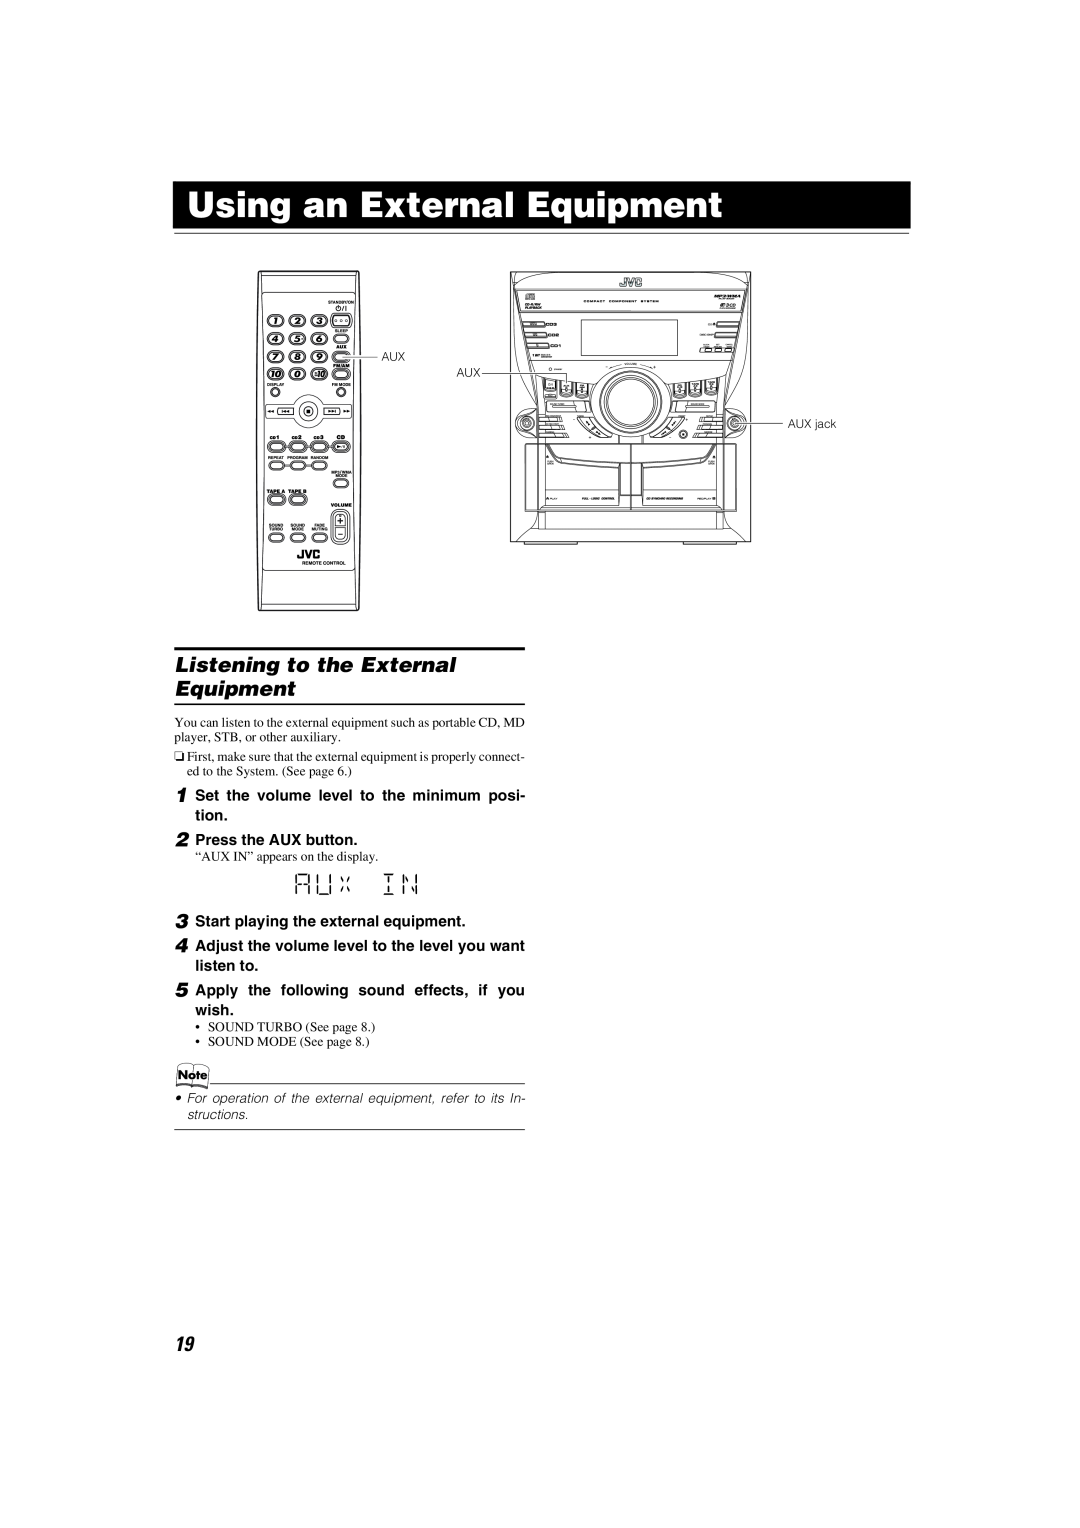 JVC MX-KC45 manual Using an External Equipment, Listening to the External Equipment, Press the AUX button 